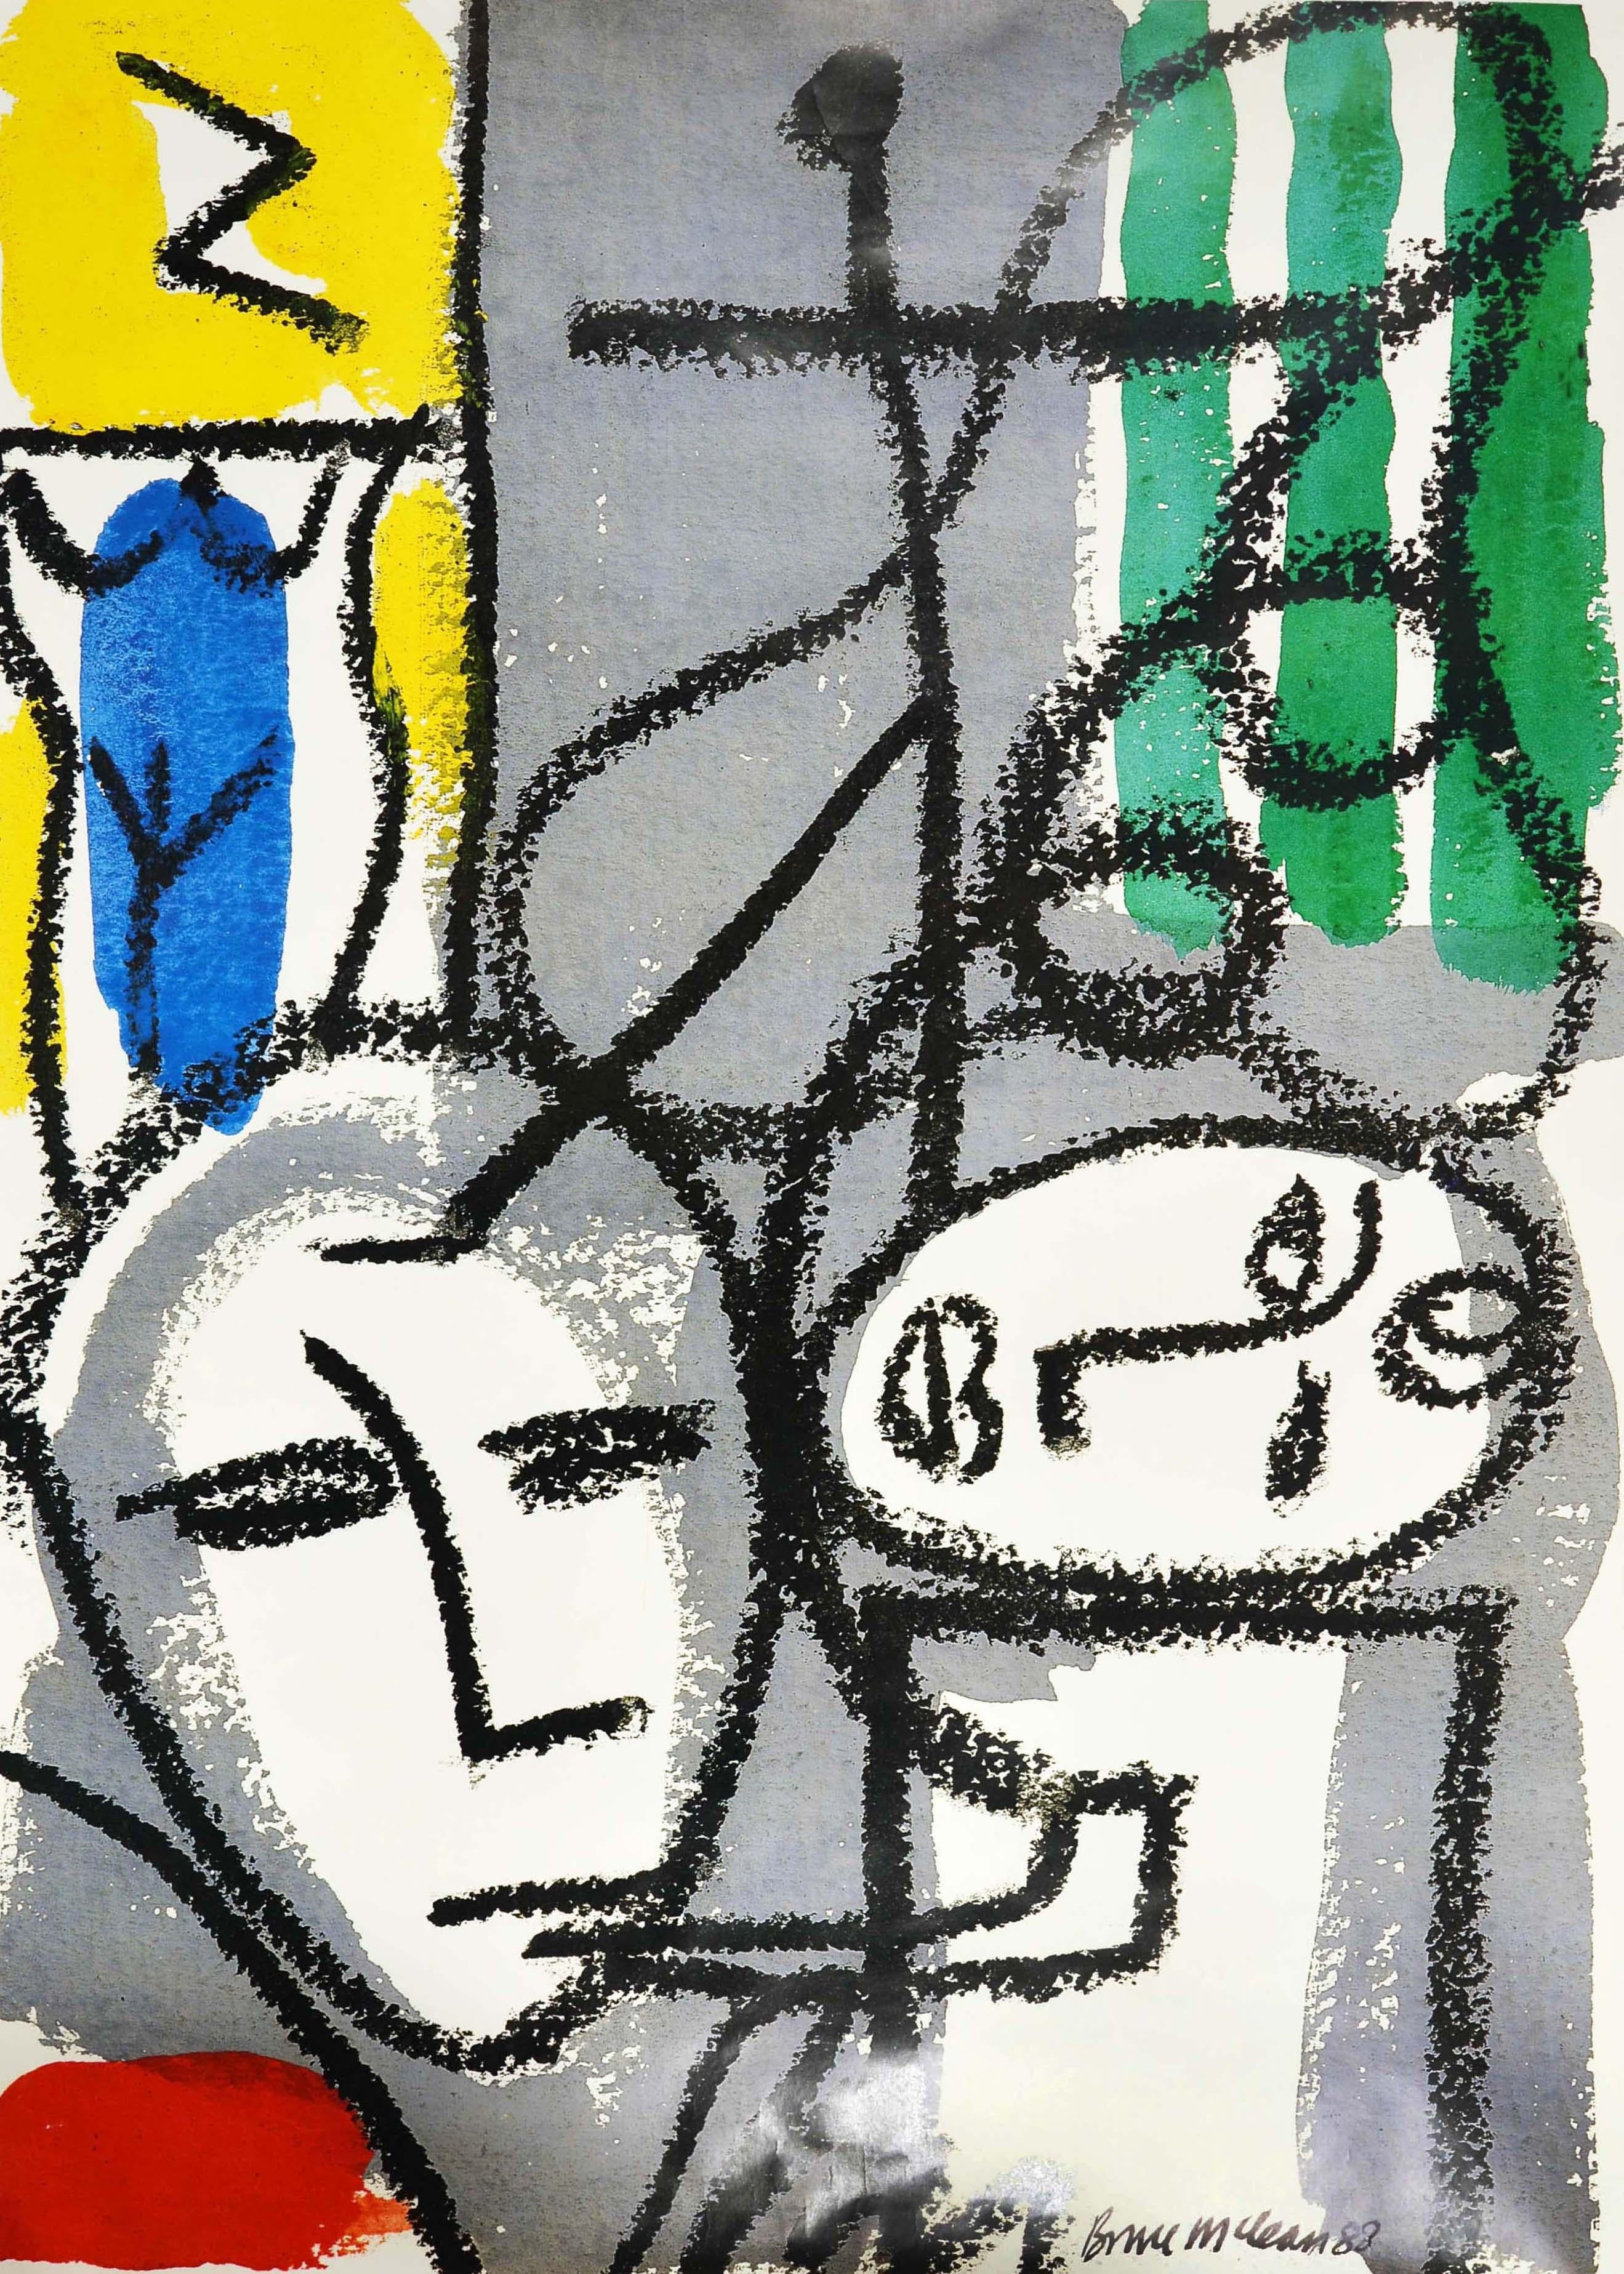 Cartel original de época del metro de Londres -Galería de Arte Whitechapel, junto a la estación de Aldgate East- con un diseño abstracto del escultor y pintor escocés Bruce McLean (n. 1944) en el que aparecen caras, una fumando en pipa y la otra